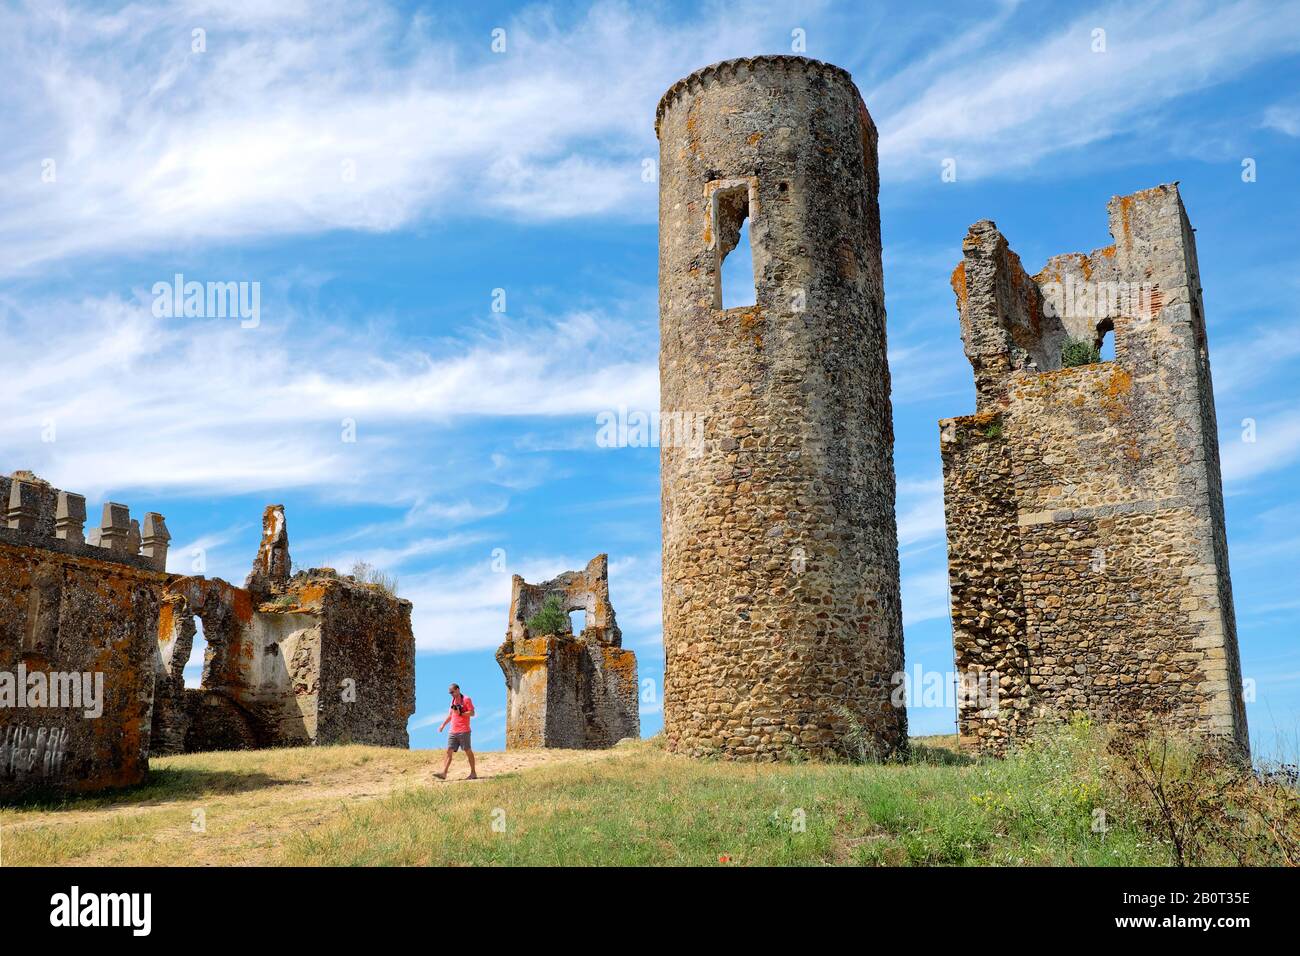 Ruinas do Castelo de Montemor-o-novo / The Castle of Montemor-o-Novo ruins, Montemor-o-Novo, Alentejo, Portugal Stock Photo